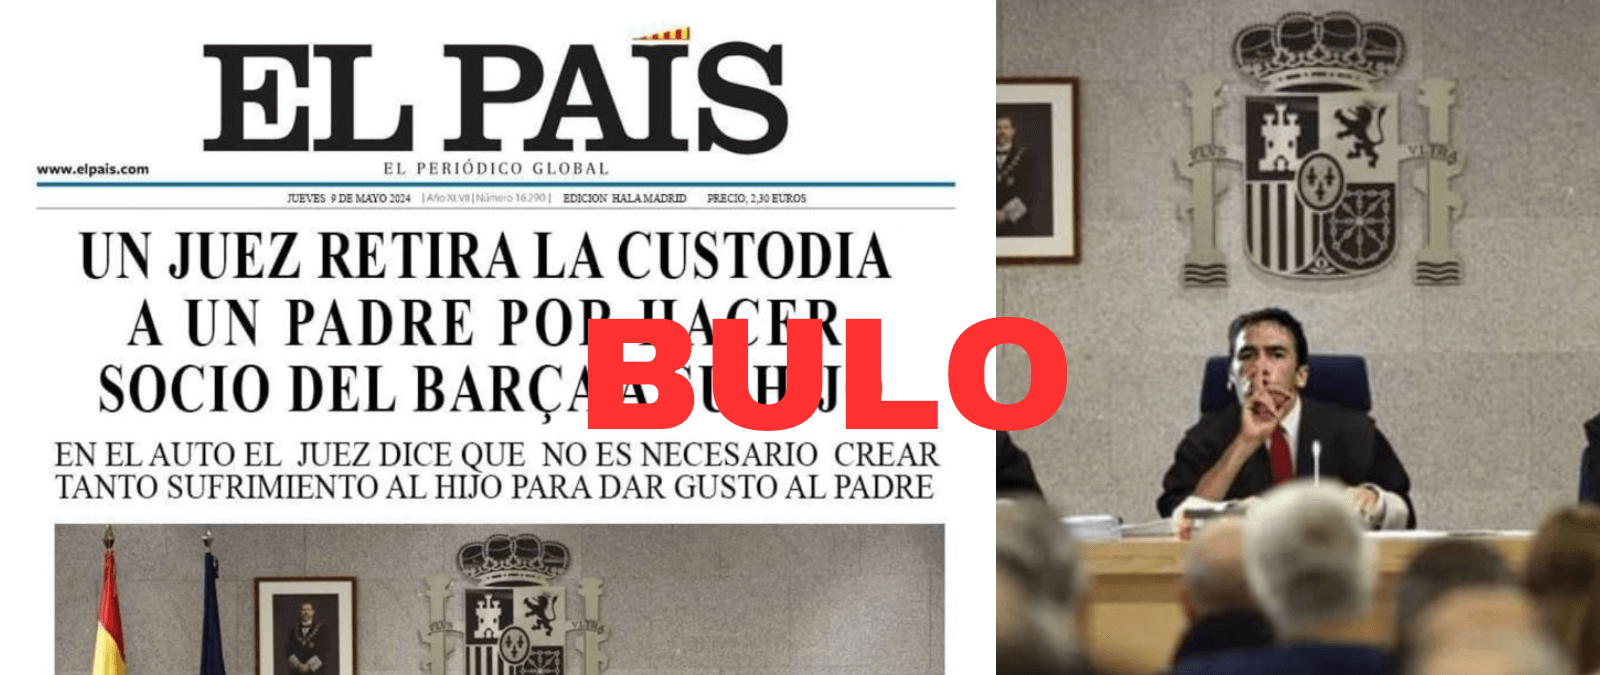 No, El País no ha publicado que un juez ha retirado la custodia a un padre por hacer socio del Barça a su hijo: es un montaje